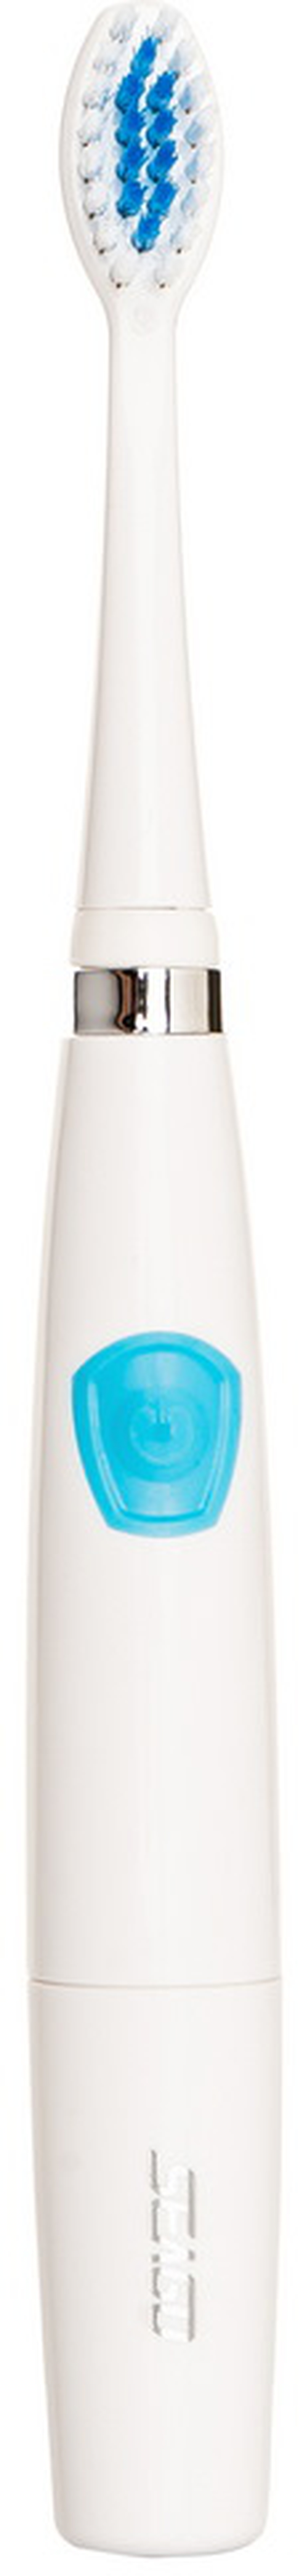 Электрическая зубная щетка SEAGO SG-912, синий фото